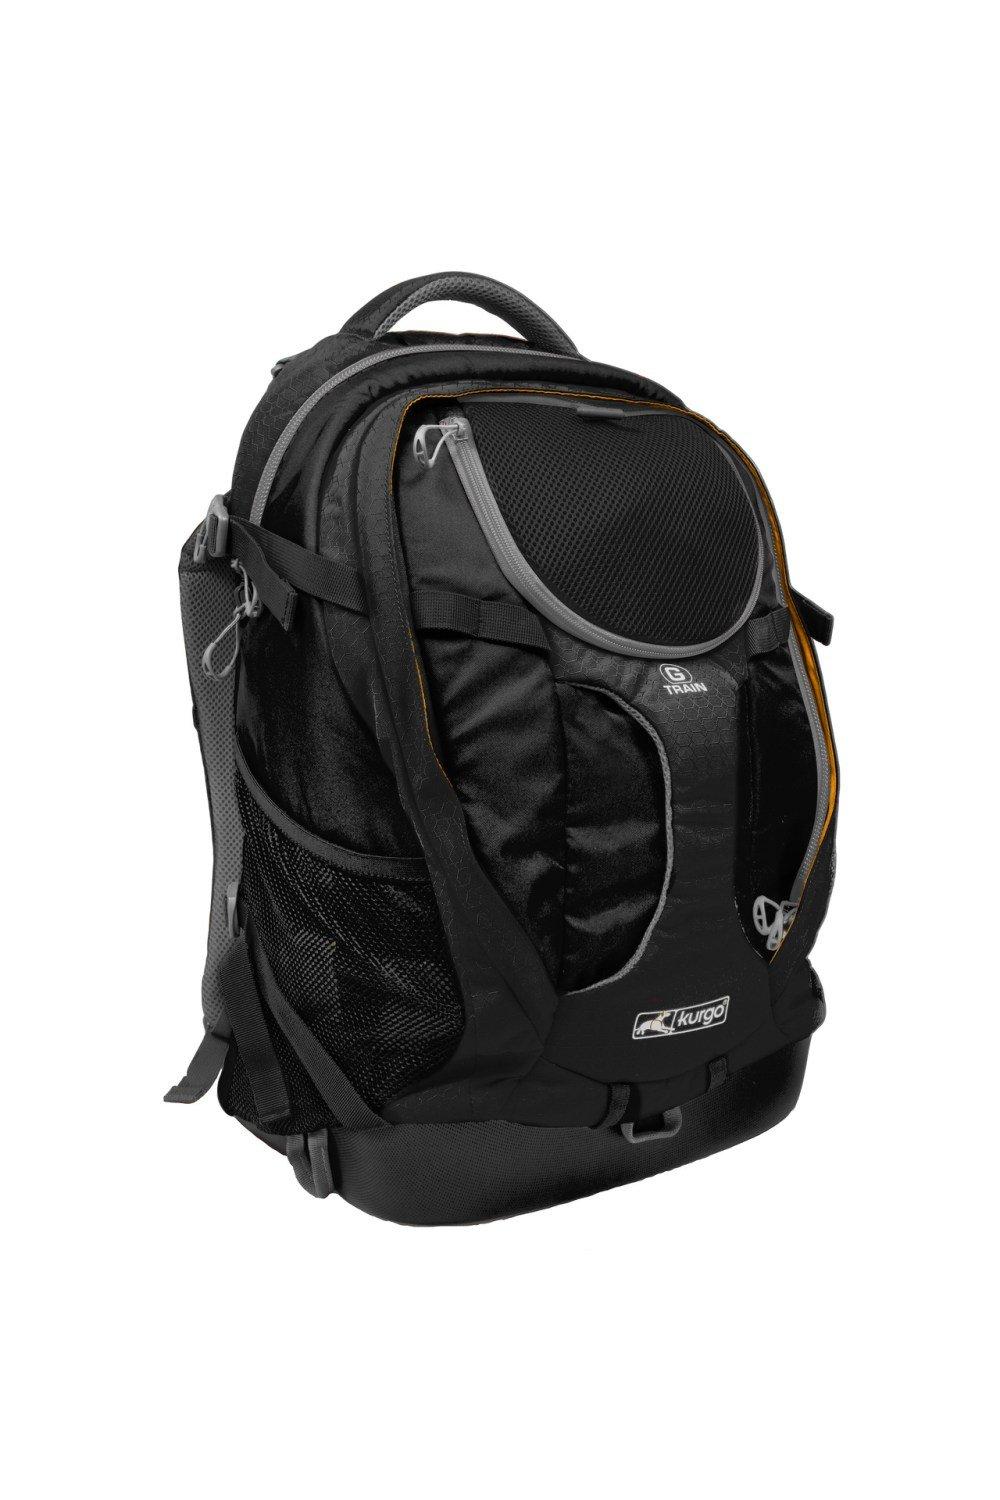 G-TRAIN K9 Dog Backpack